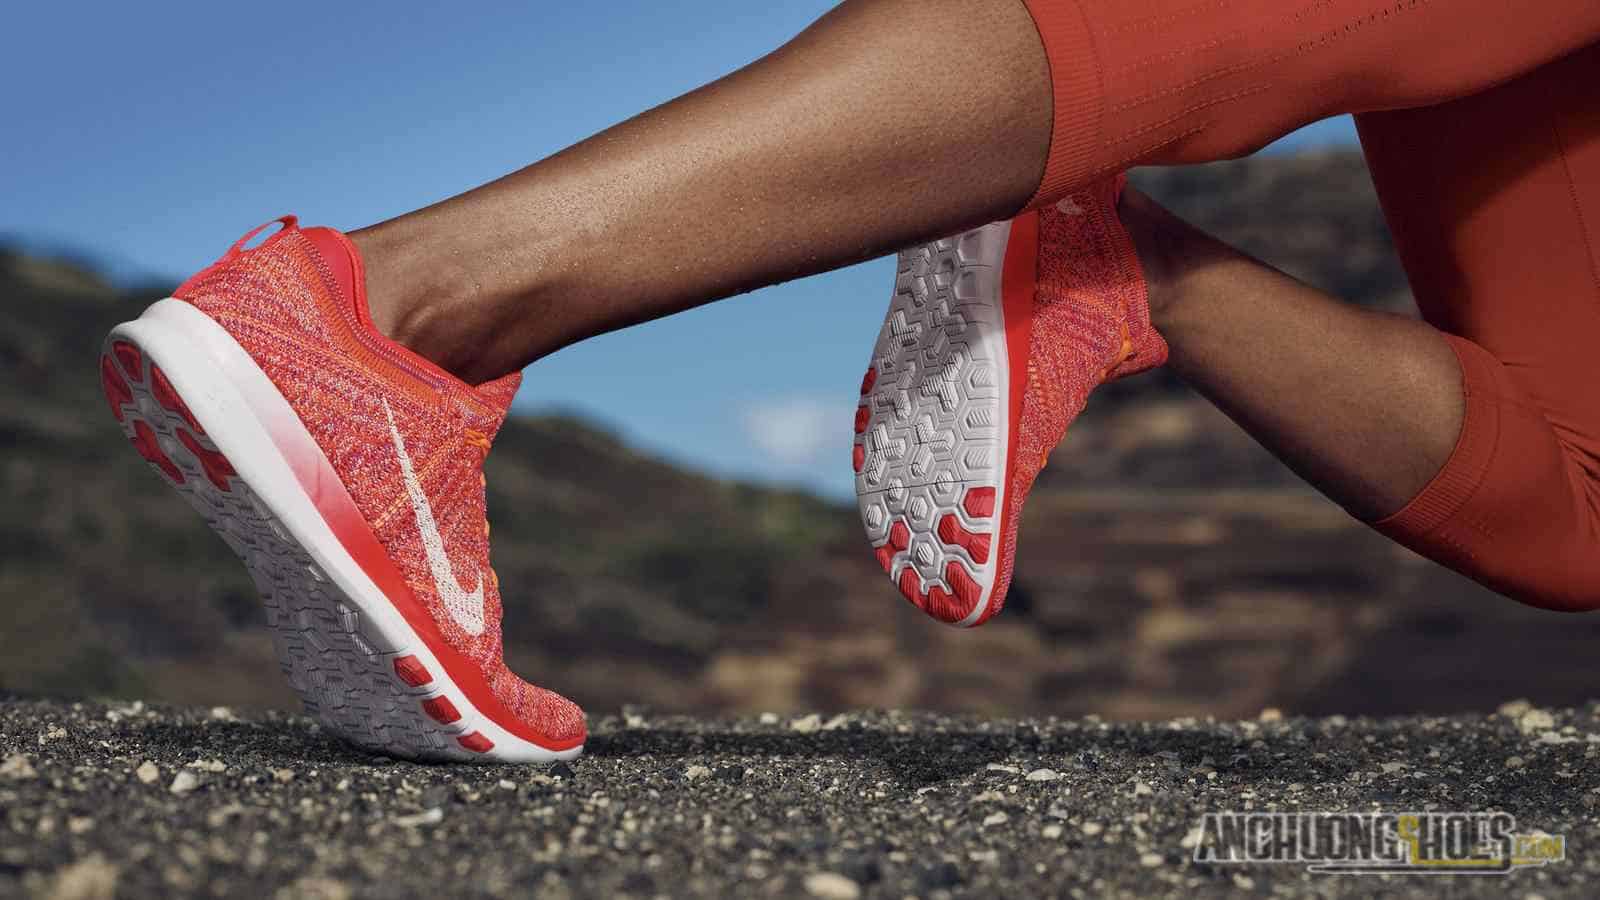 Tobie cùng đội ngũ thiết kế đã sáng tạo ra công nghệ độc - lạ Nike Free với các đường xẻ sâu